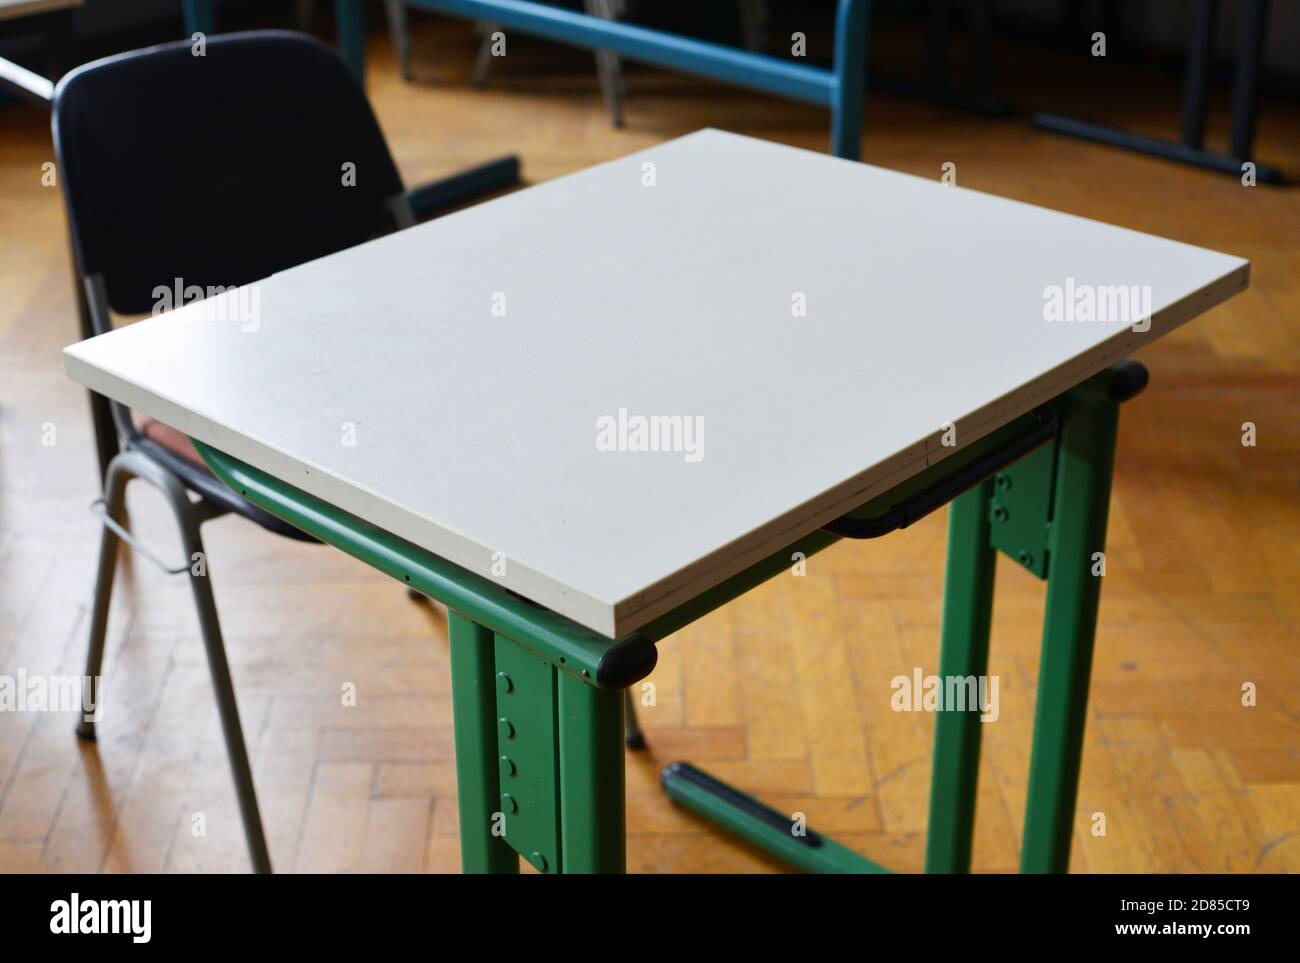 Espace de travail unique dans une salle de classe, table et chaise Banque D'Images